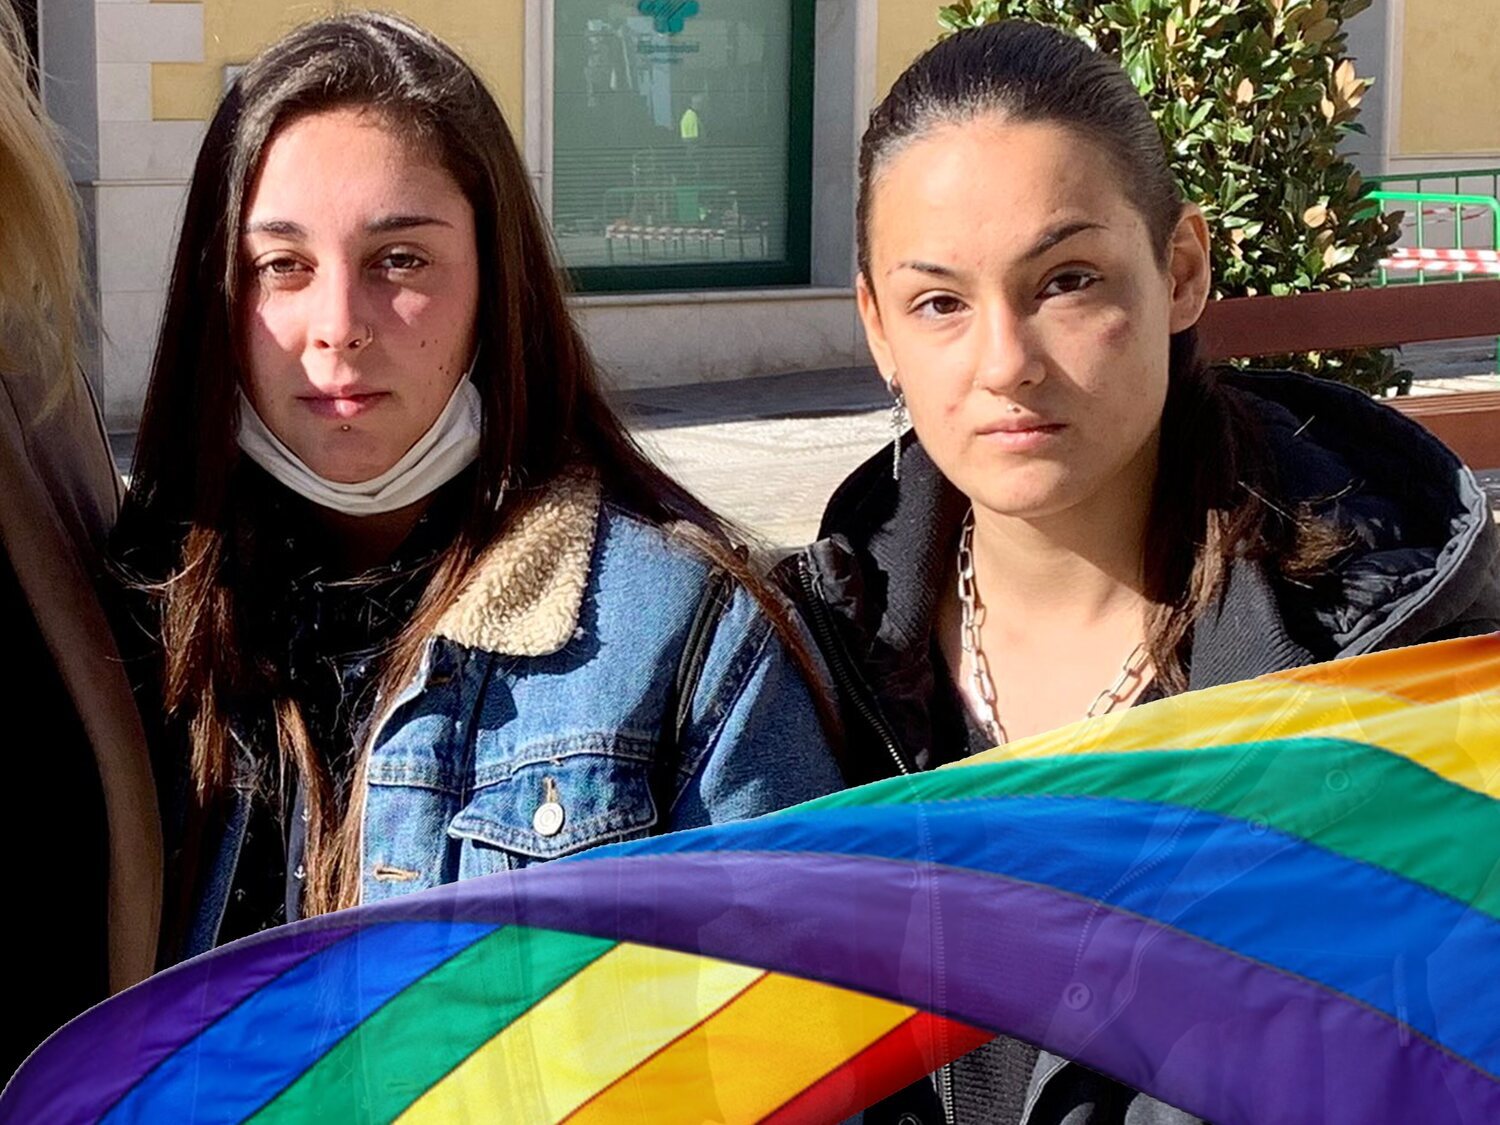 Agresión homofóba en Motril a una pareja lesbiana: "No quiero volver a sentir miedo"